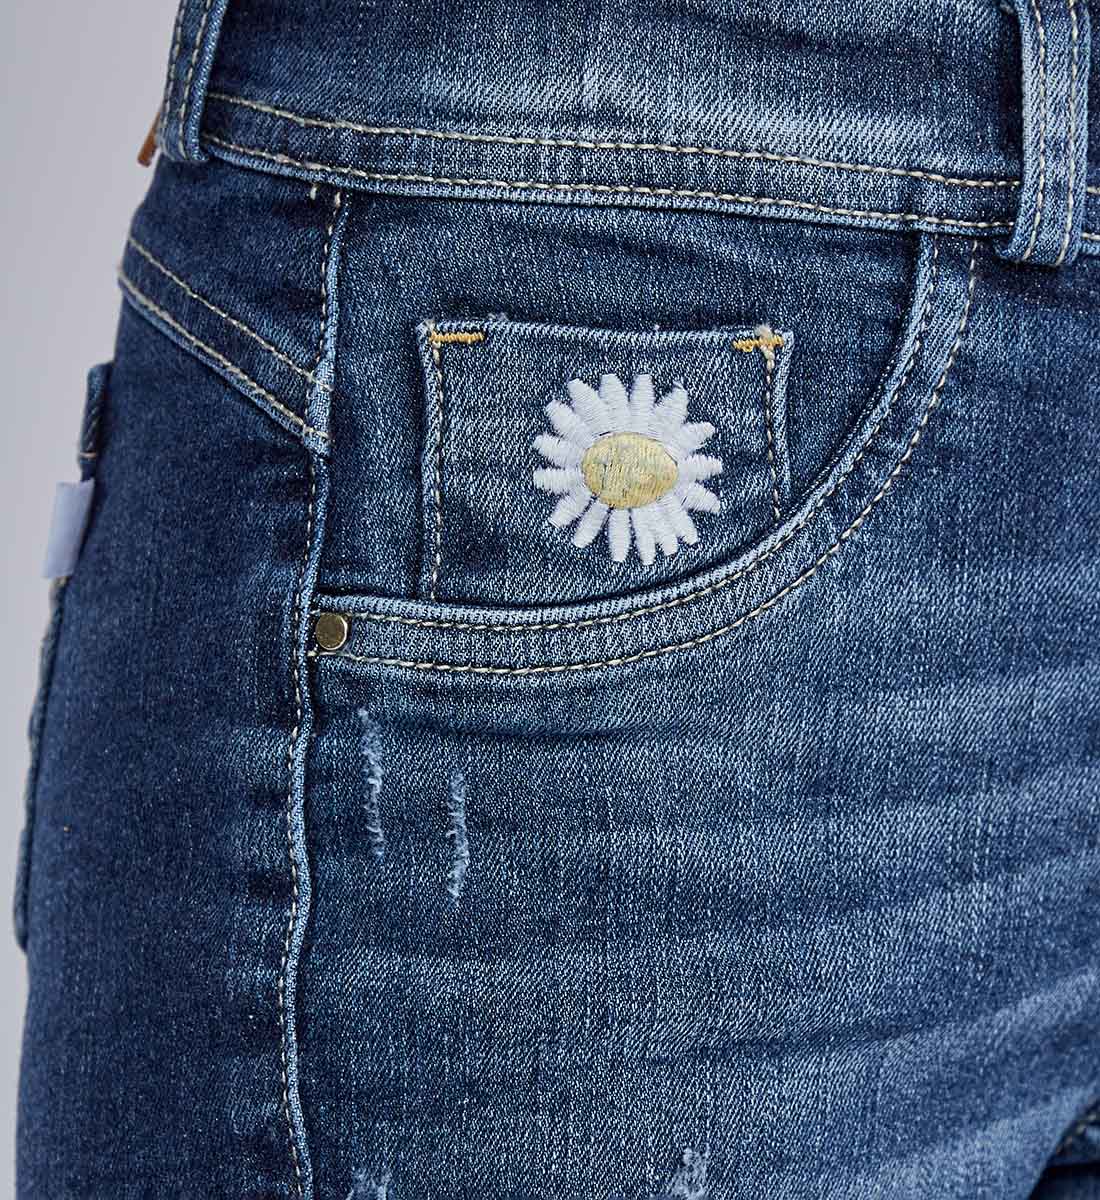 Jeans Industrial Dama - Bordados, Estampados y Dotaciones - Acrear  Publicidad